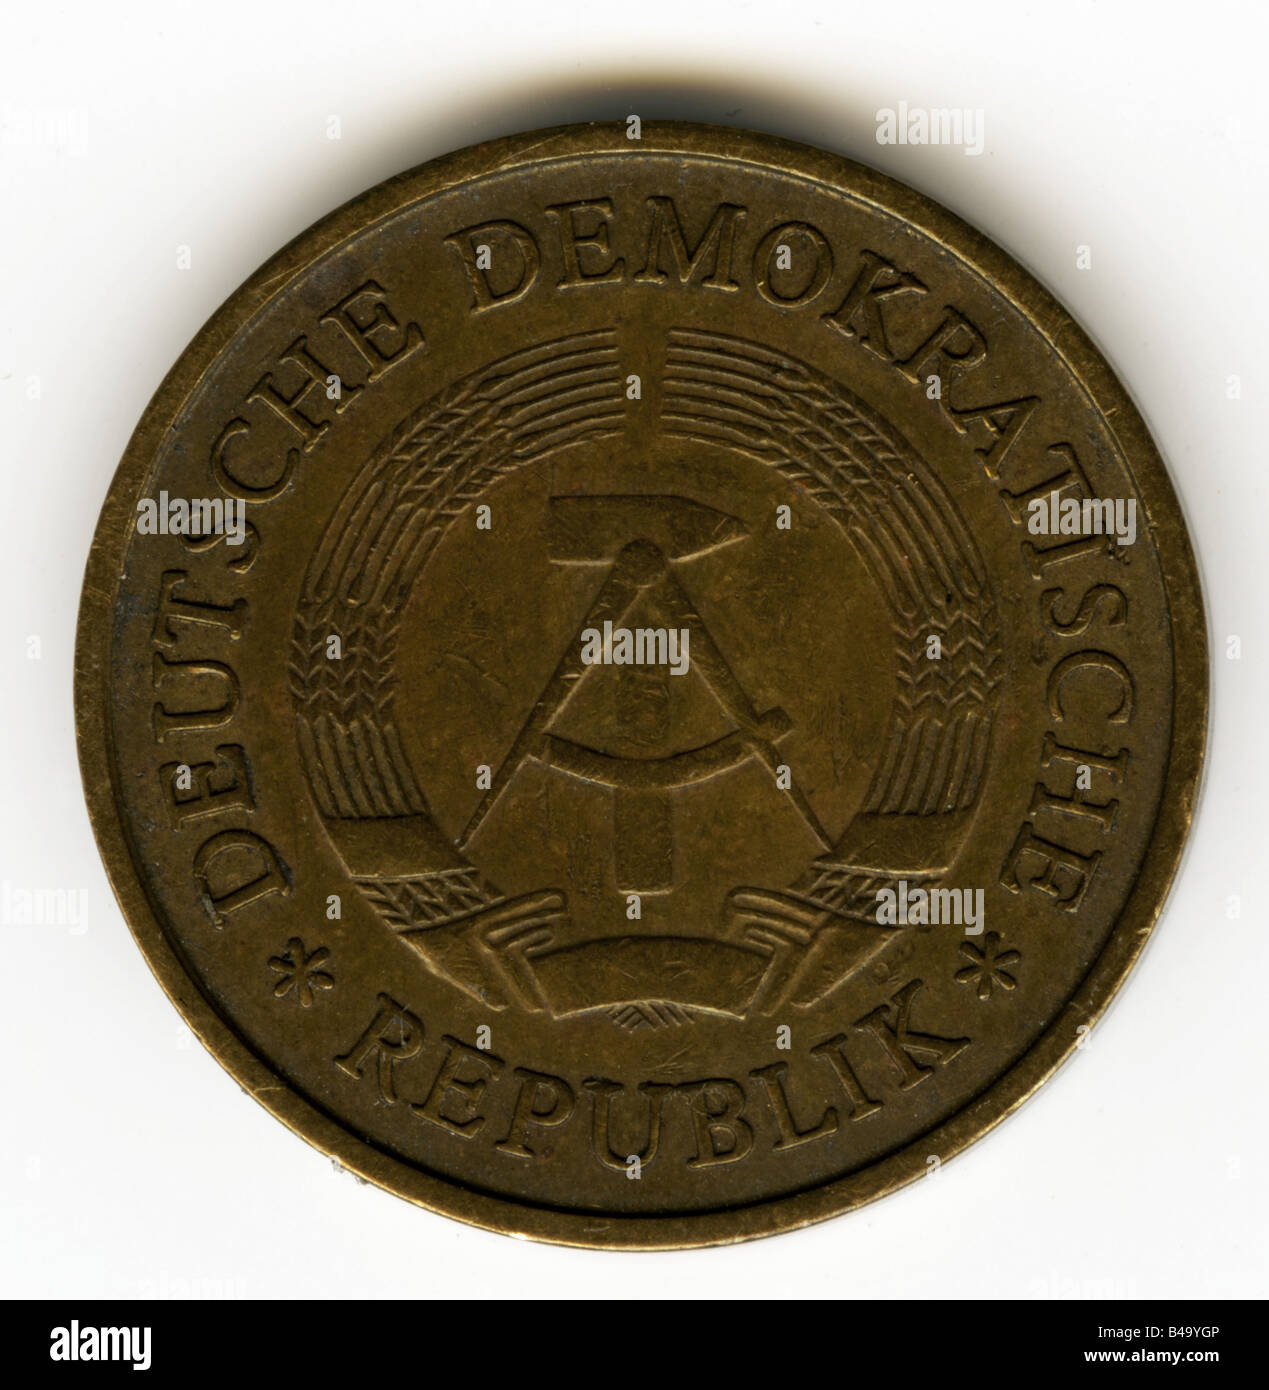 Geld, Münzen, Deutsche Demokratische Republik (DDR), 20 Pfennig, 1969  Stockfotografie - Alamy